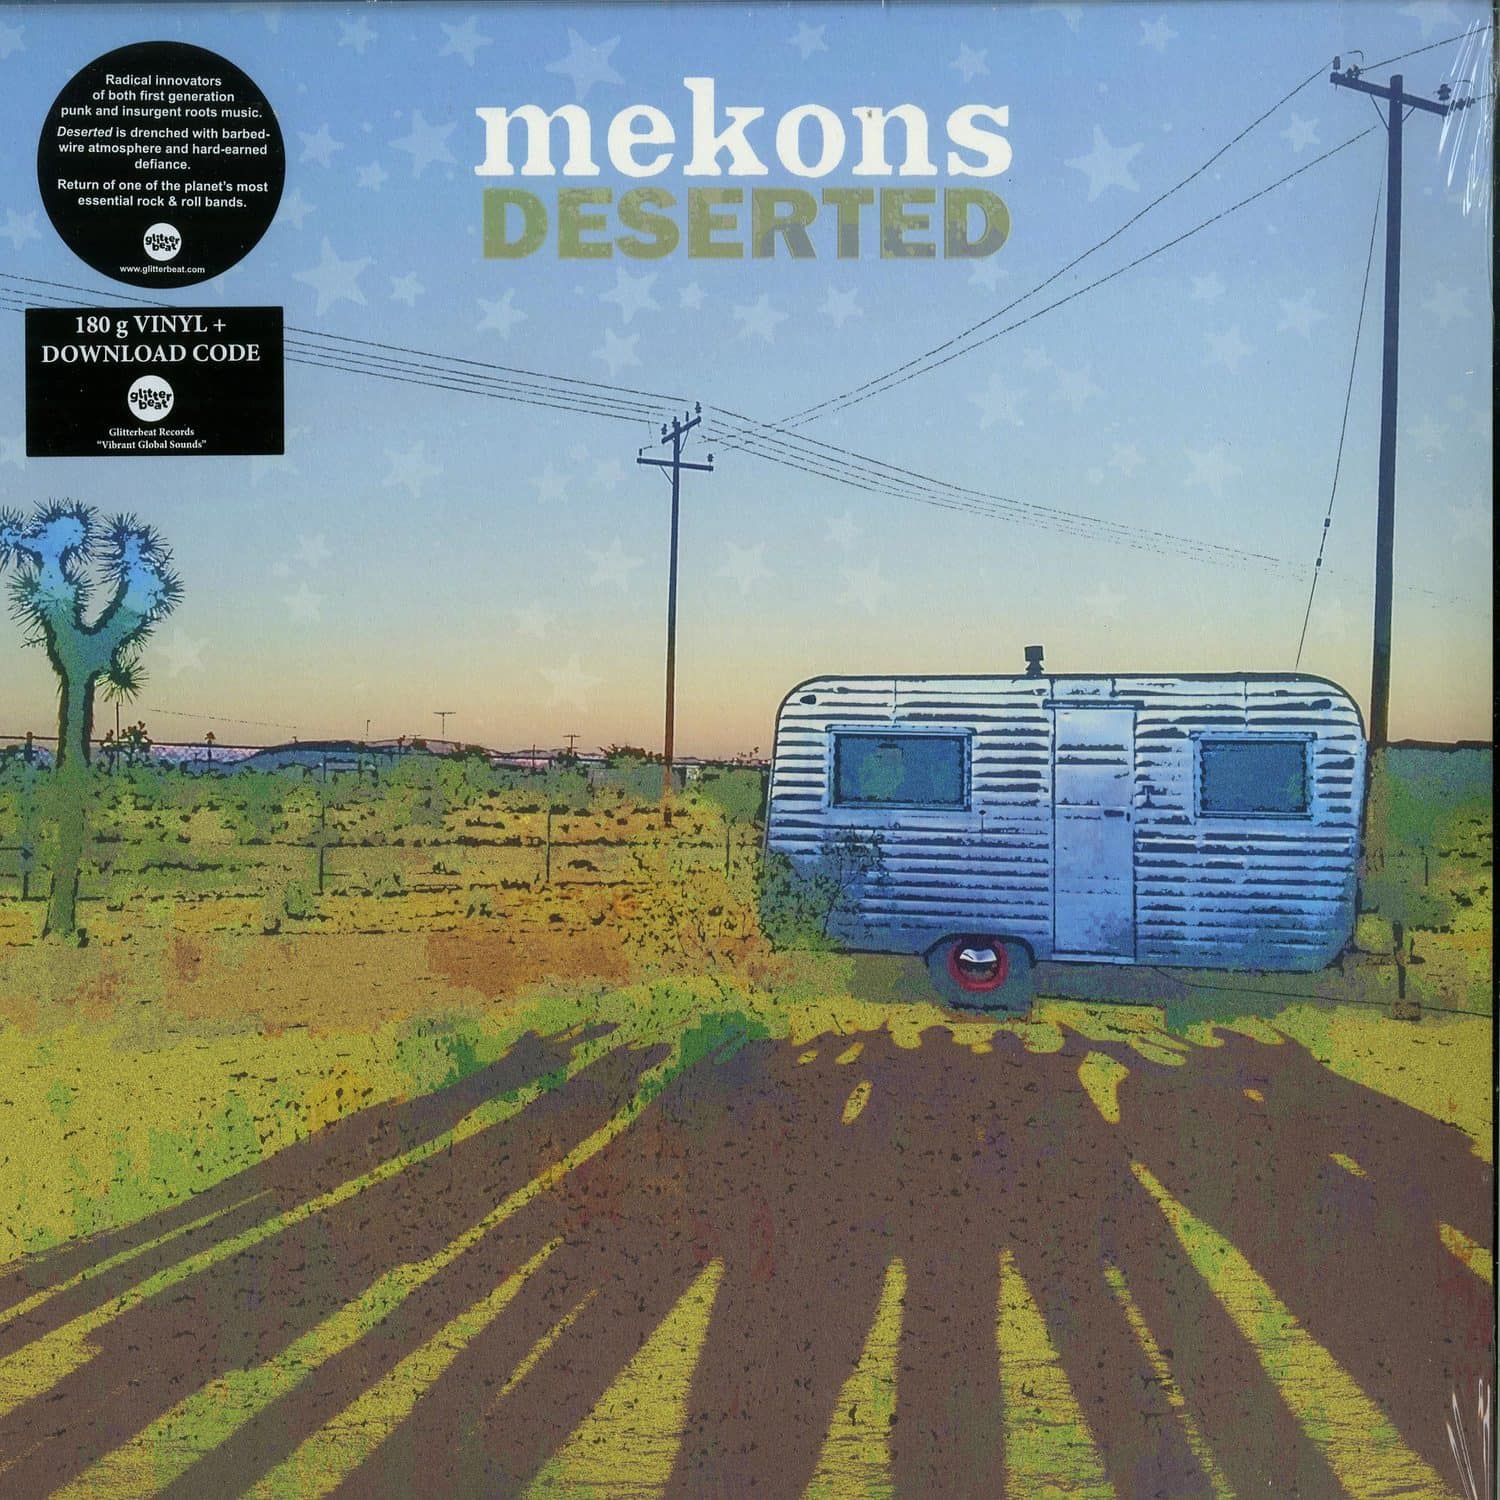 The Mekons - DESERTED 